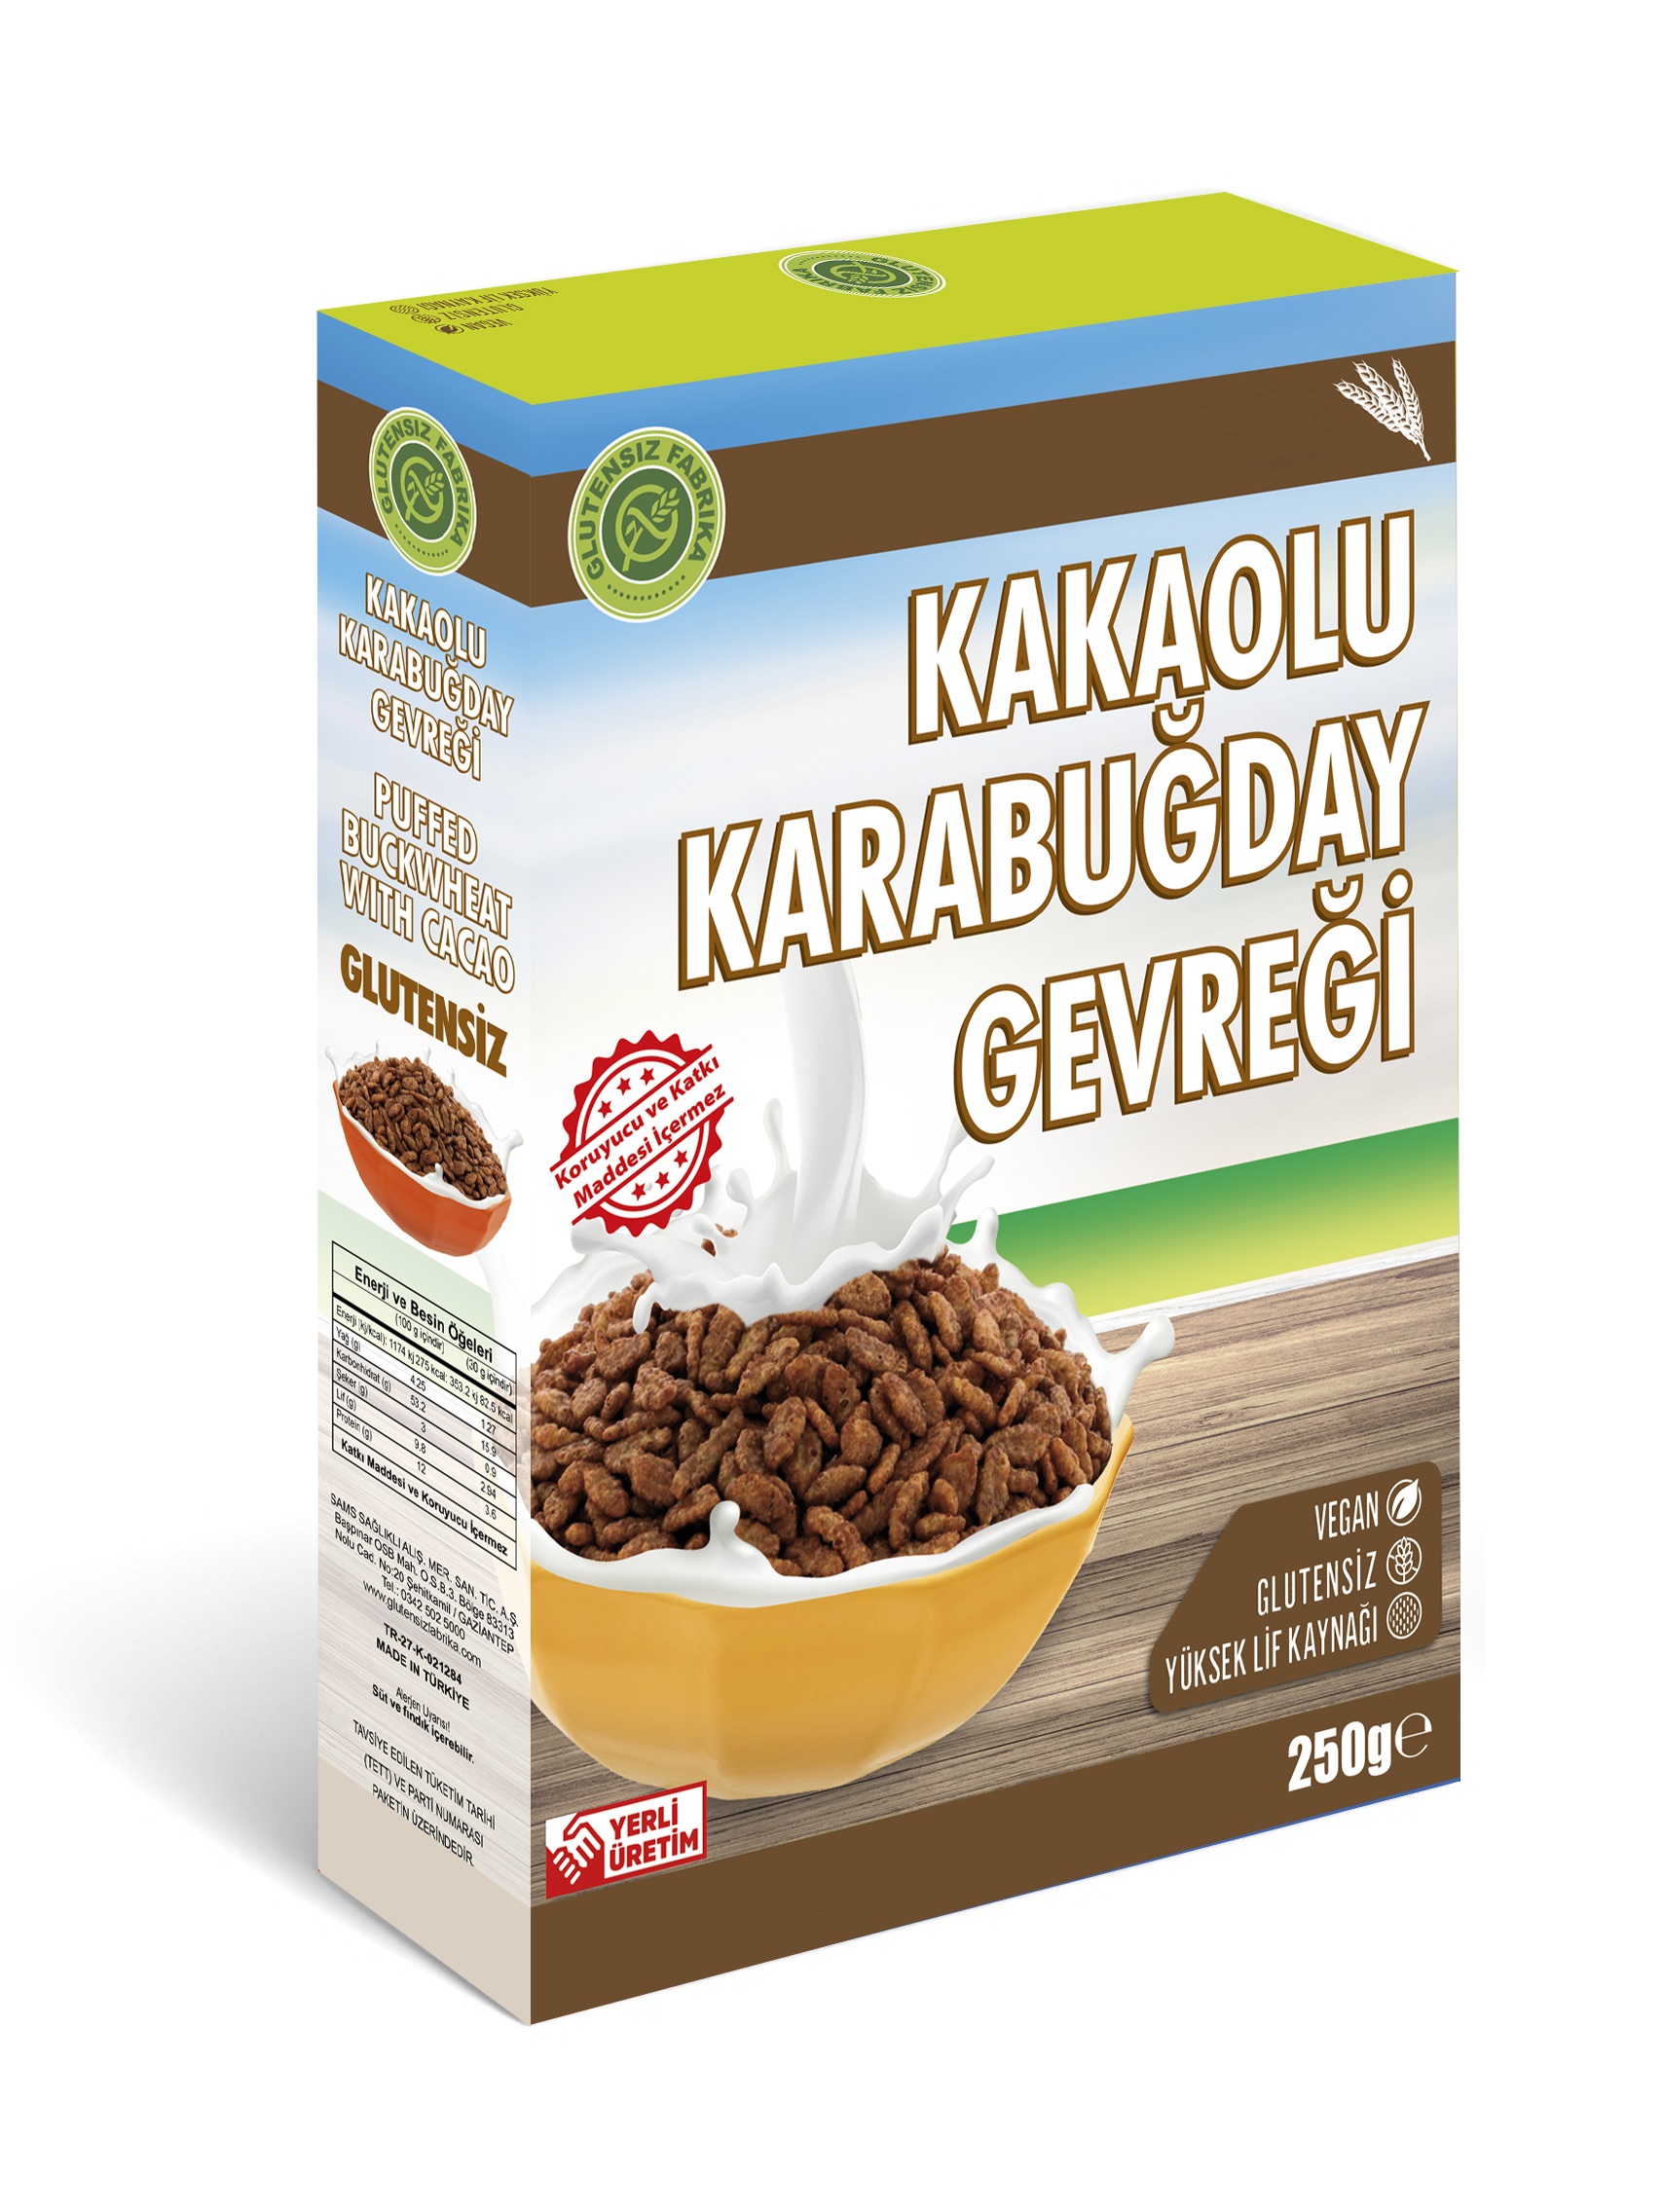 Glutensiz Kakaolu Karabuğday Gevreği 250 Gram Katkısız Doğal Sağlıklı